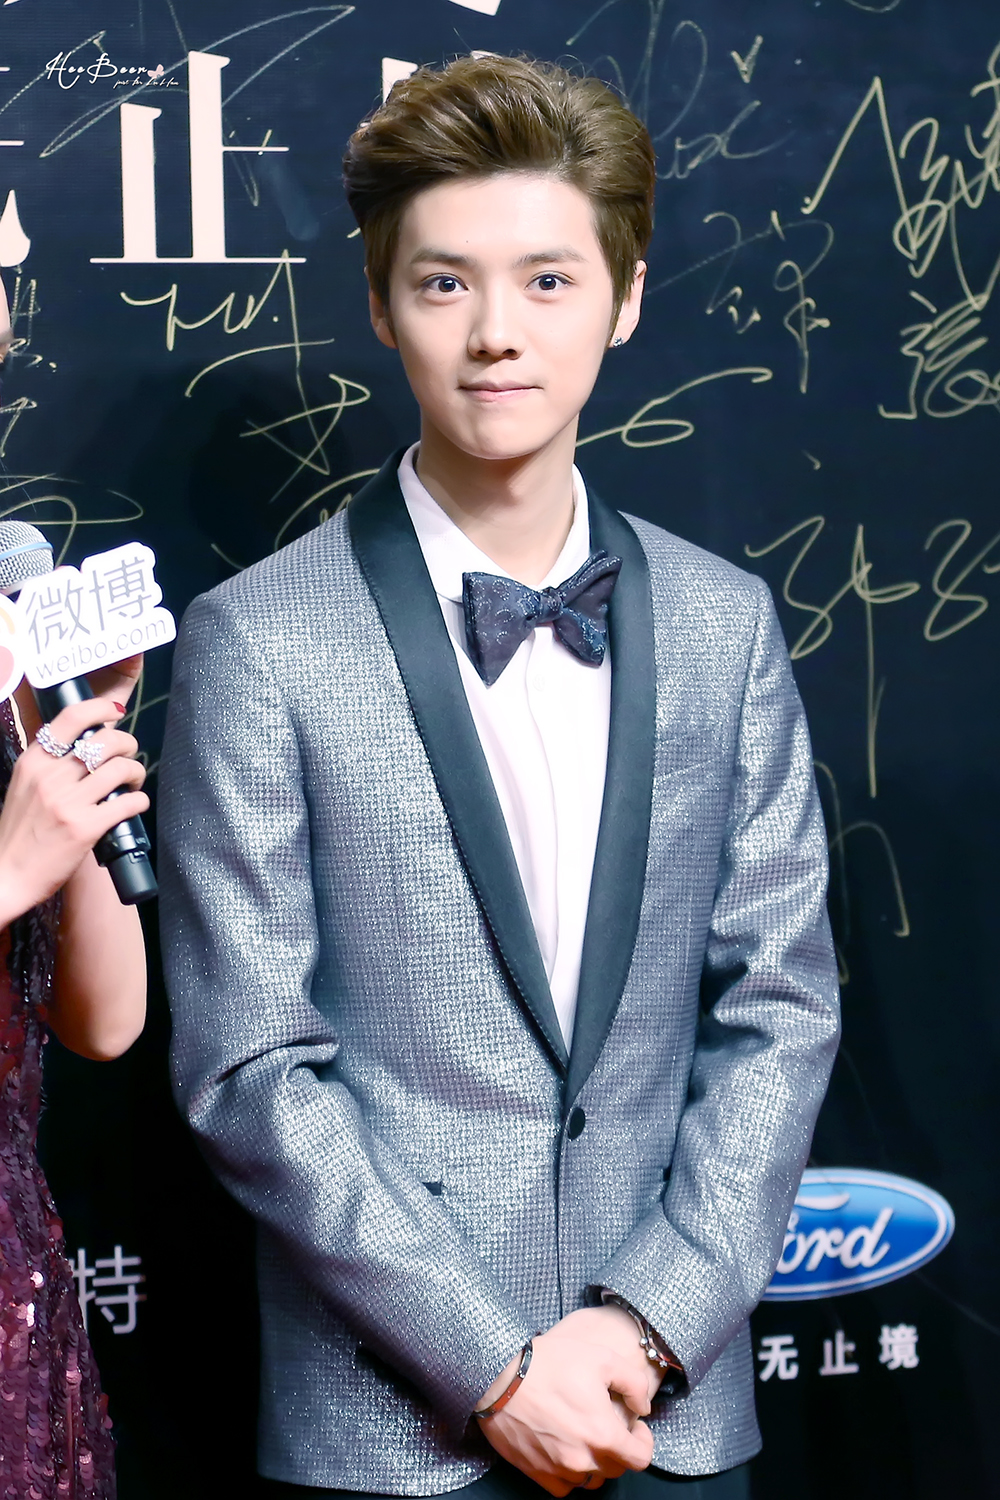 [FANTAKEN] 150115 2014 Weibo Awards Night [100P] 005vuw7Ljw1eocf3oe7u5j30rs15o4qp